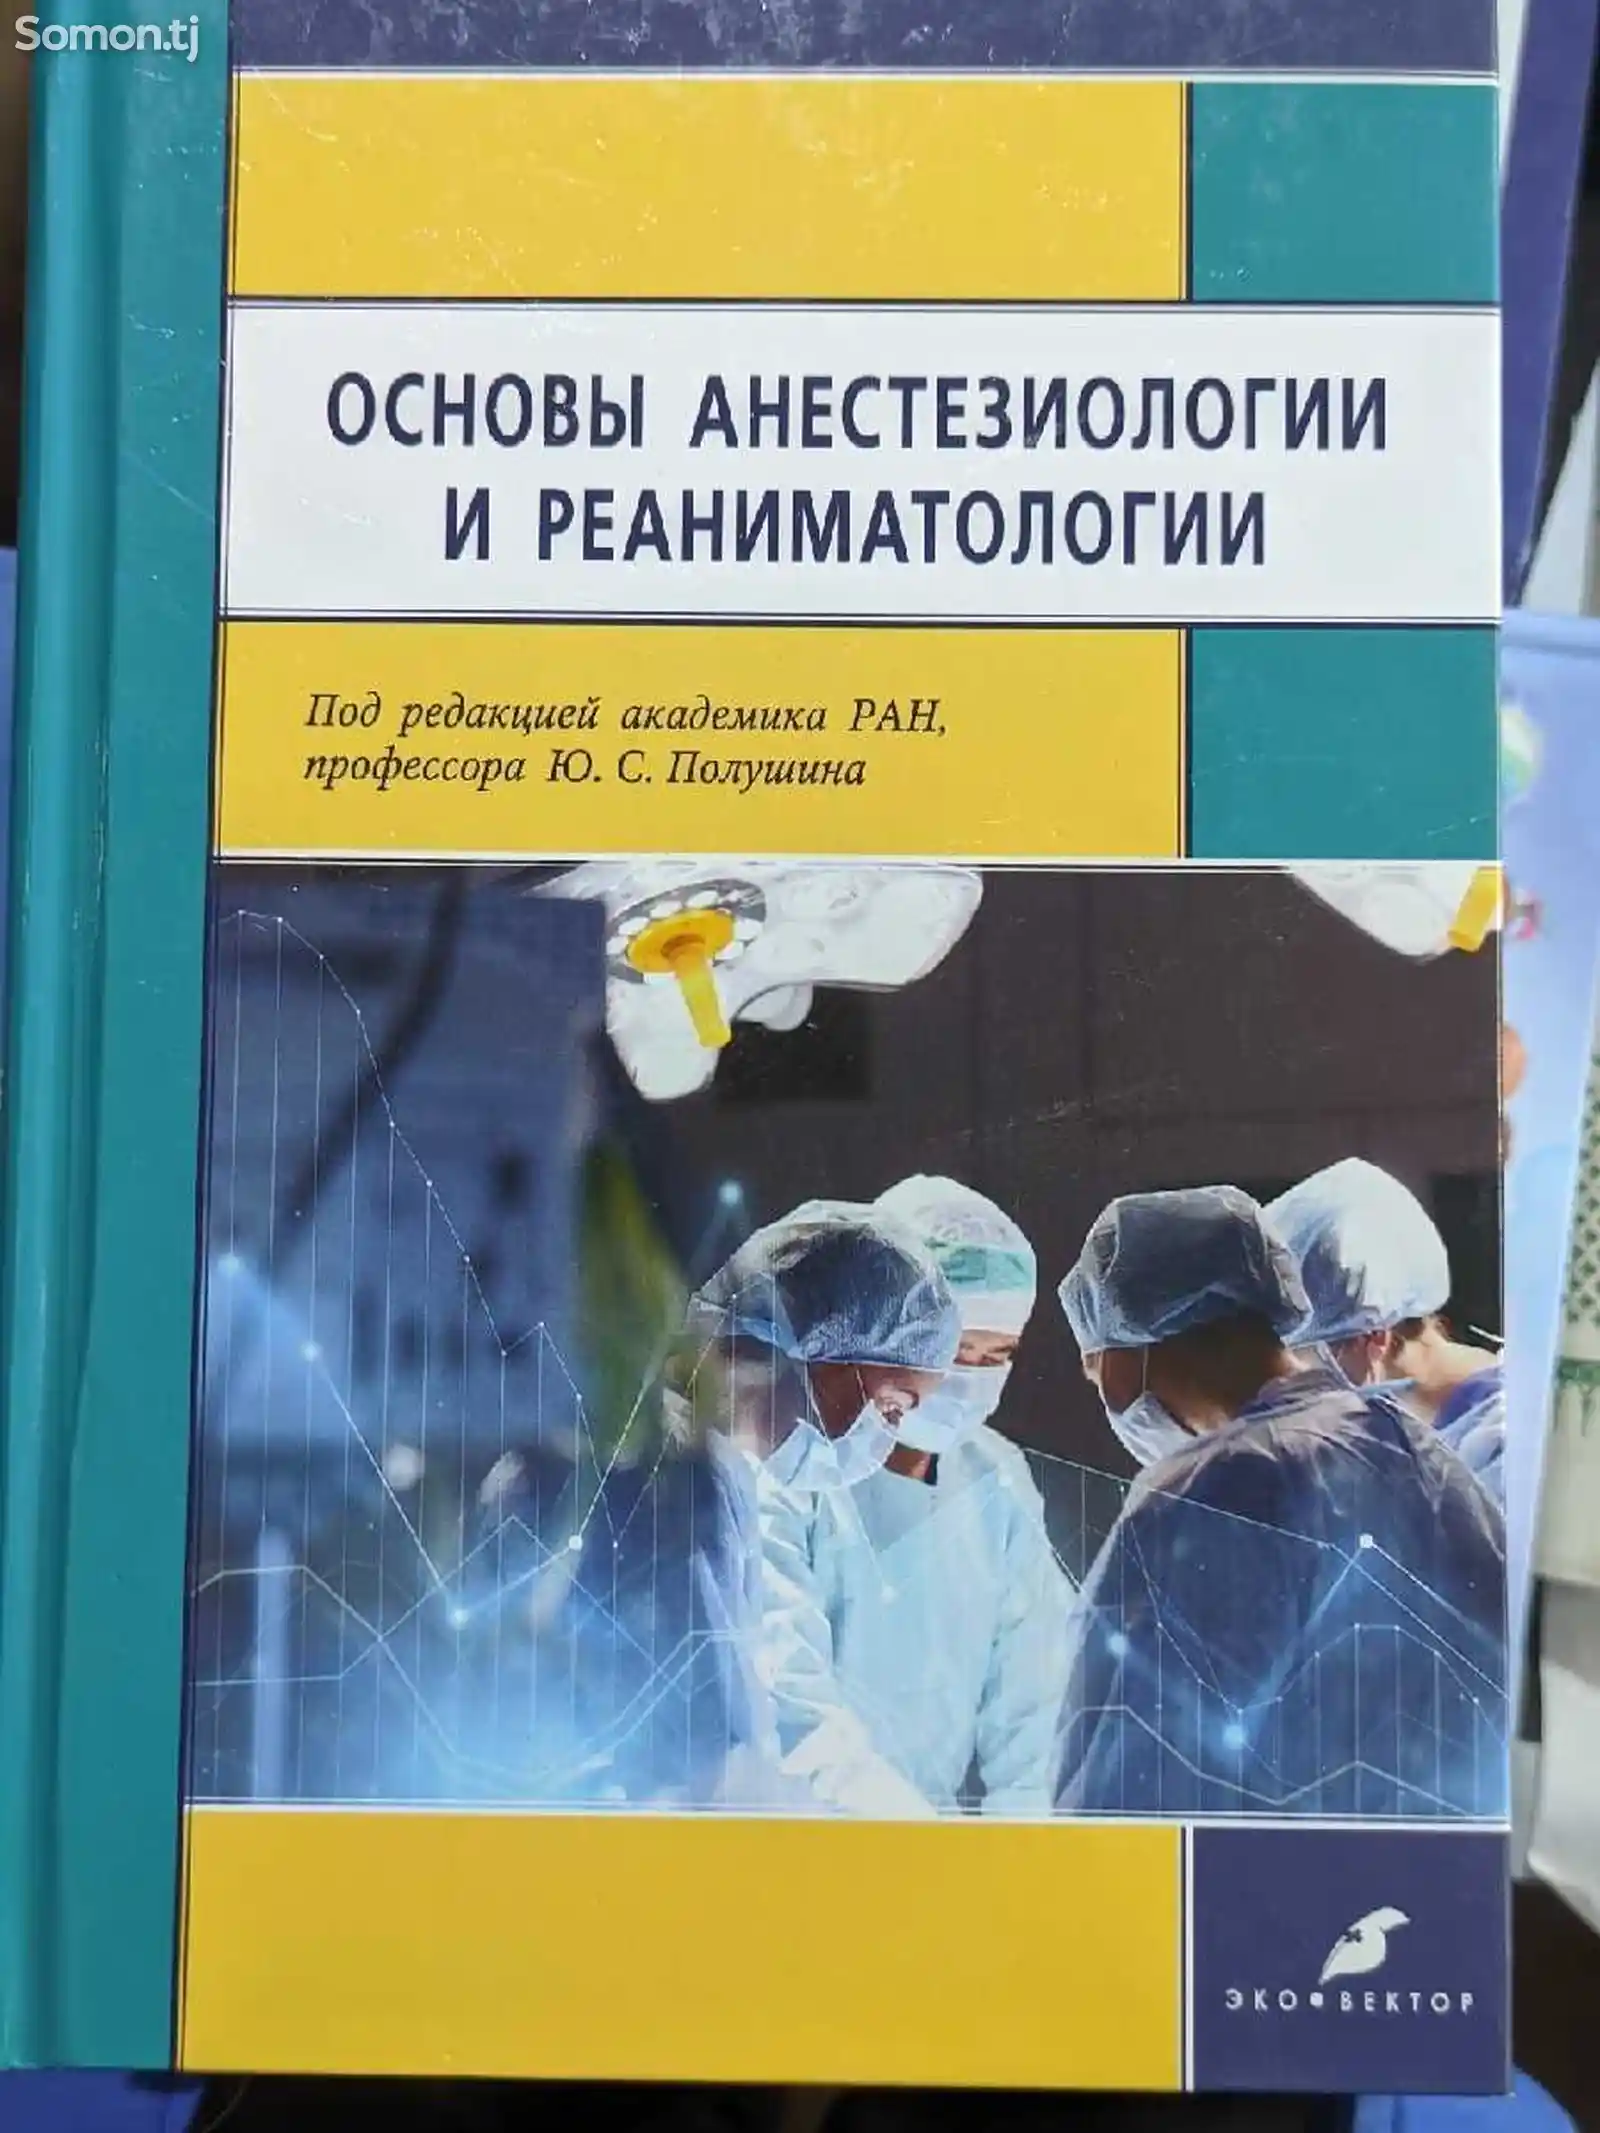 Книга Основы анестезиологии и реаниматологии-1